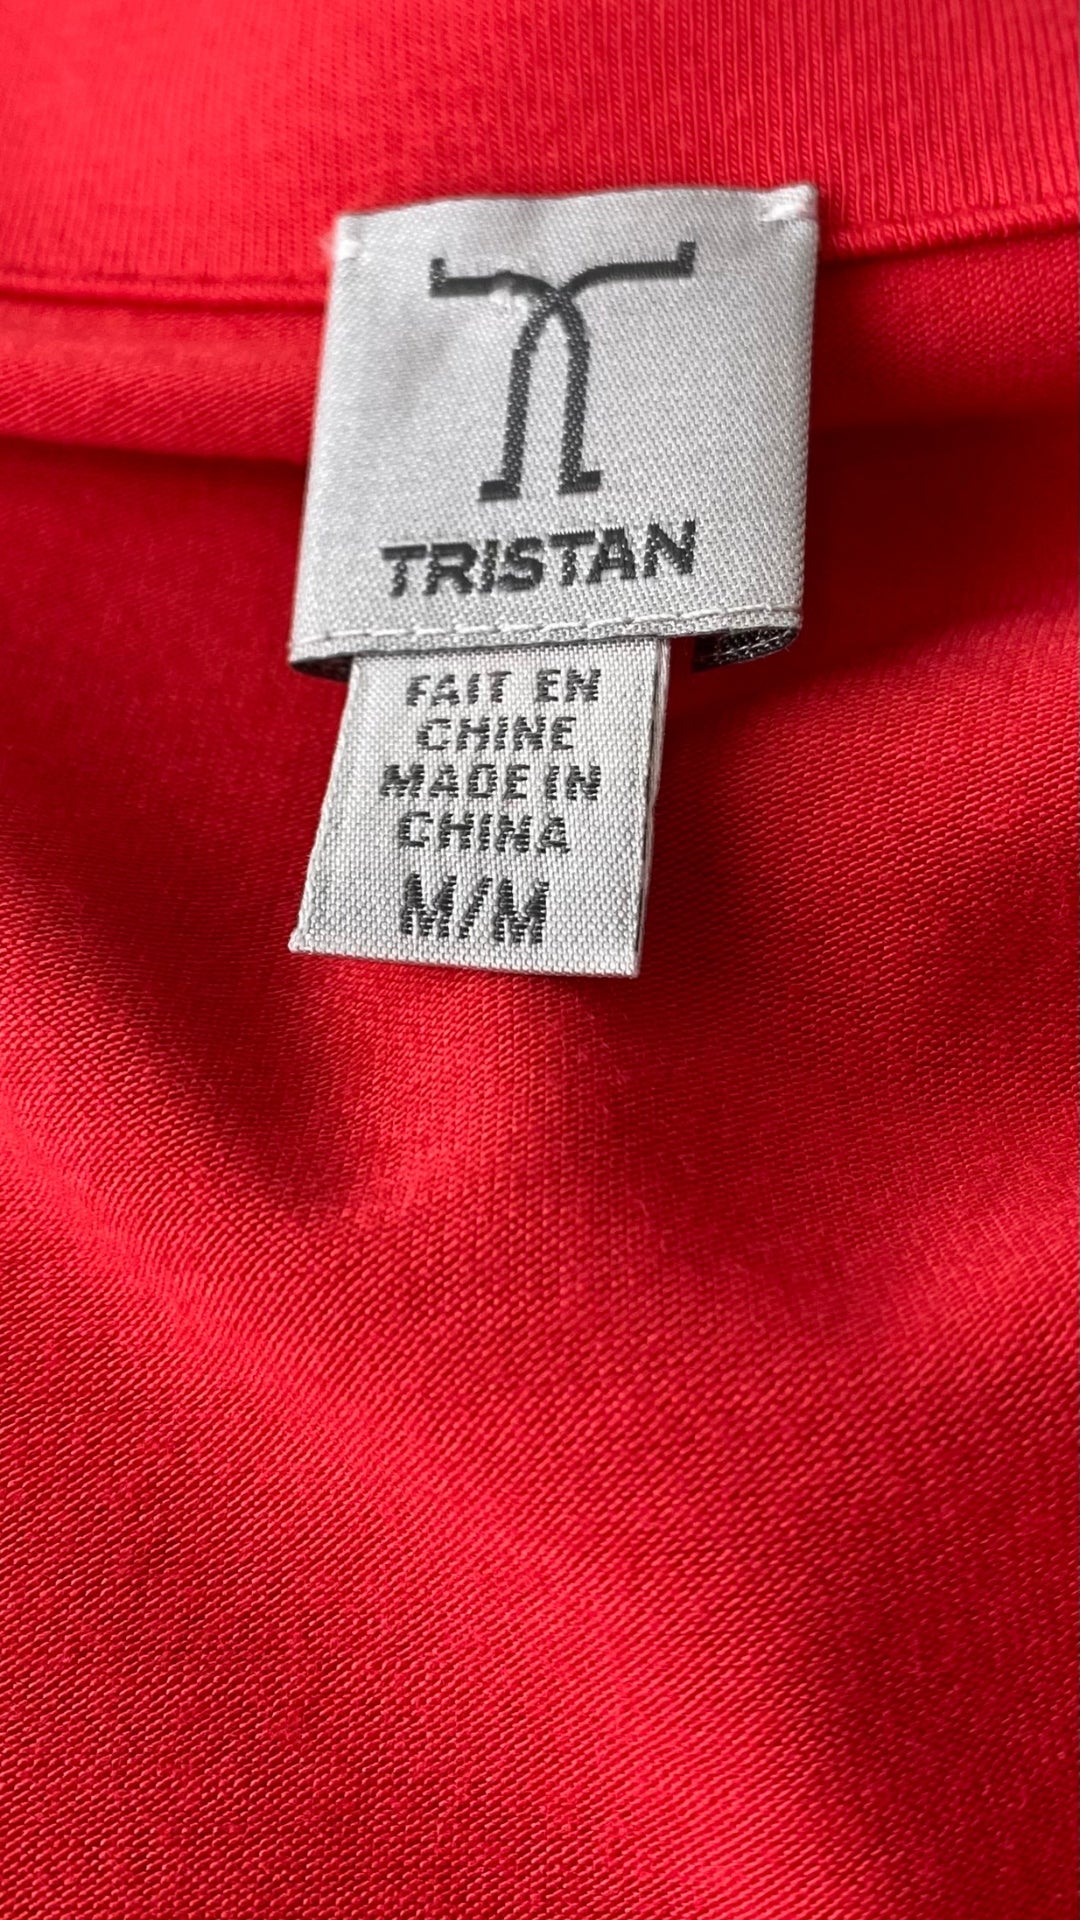 Robe rouge extensible cache-coeur drapé Tristan, taille medium. Vue de l'étiquette de marque et taille.